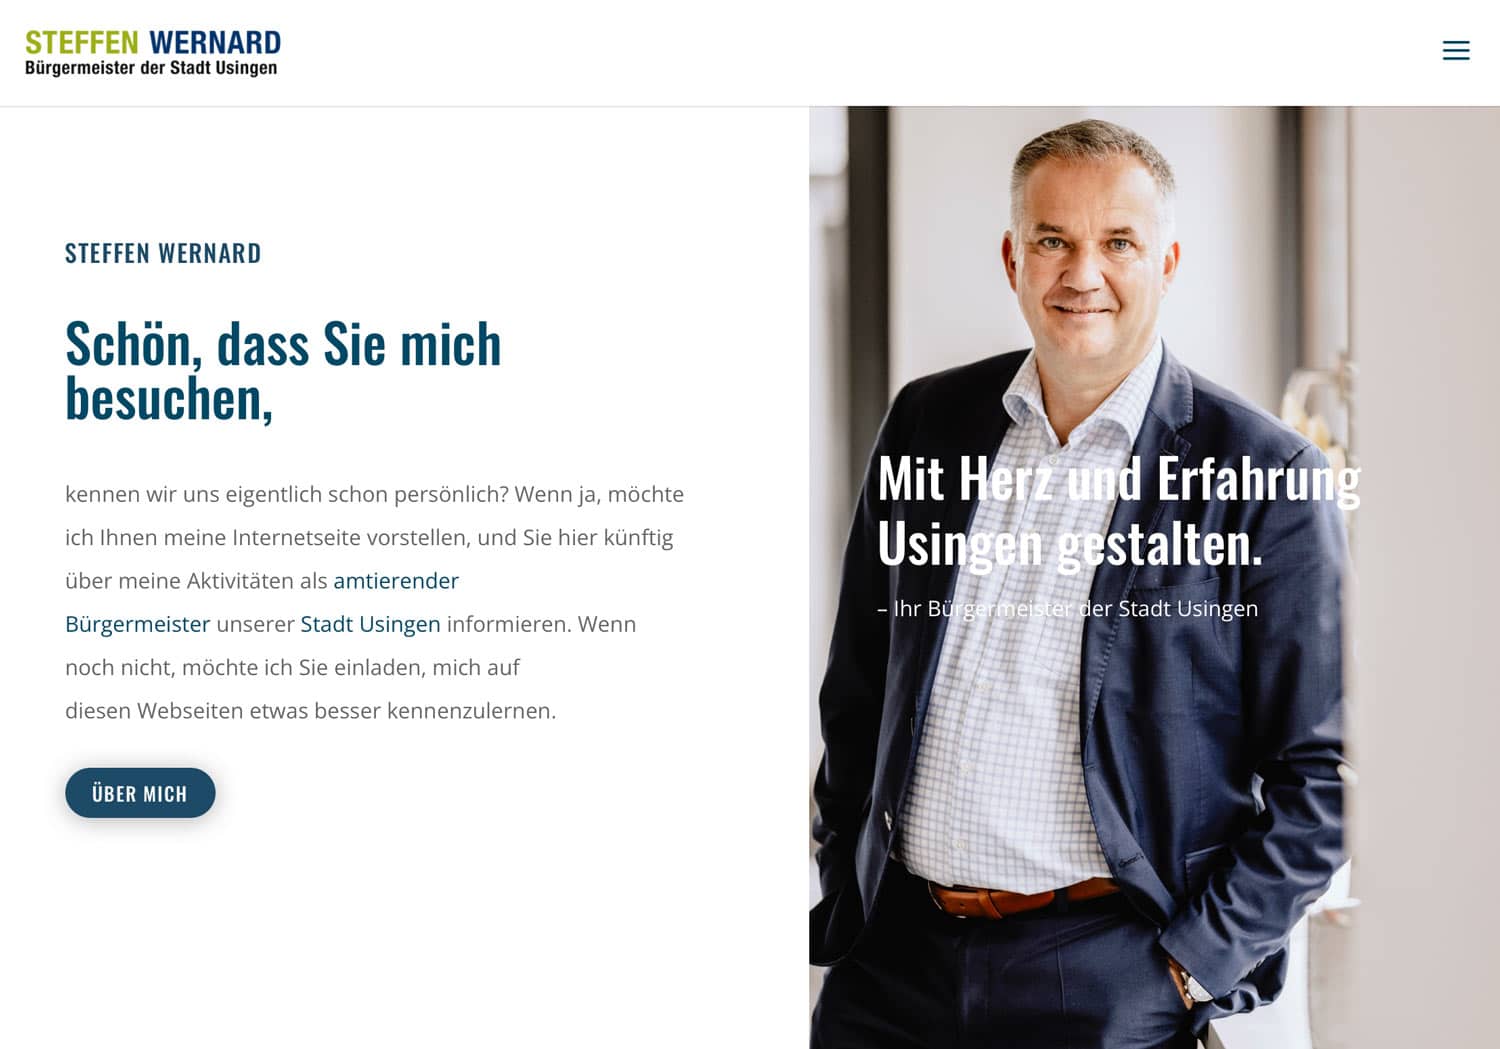 Steffen Wernard Buergermeister Stadt Usingen Homepage Relaunch powered by DER-PR-BERATER Dirk Rabis